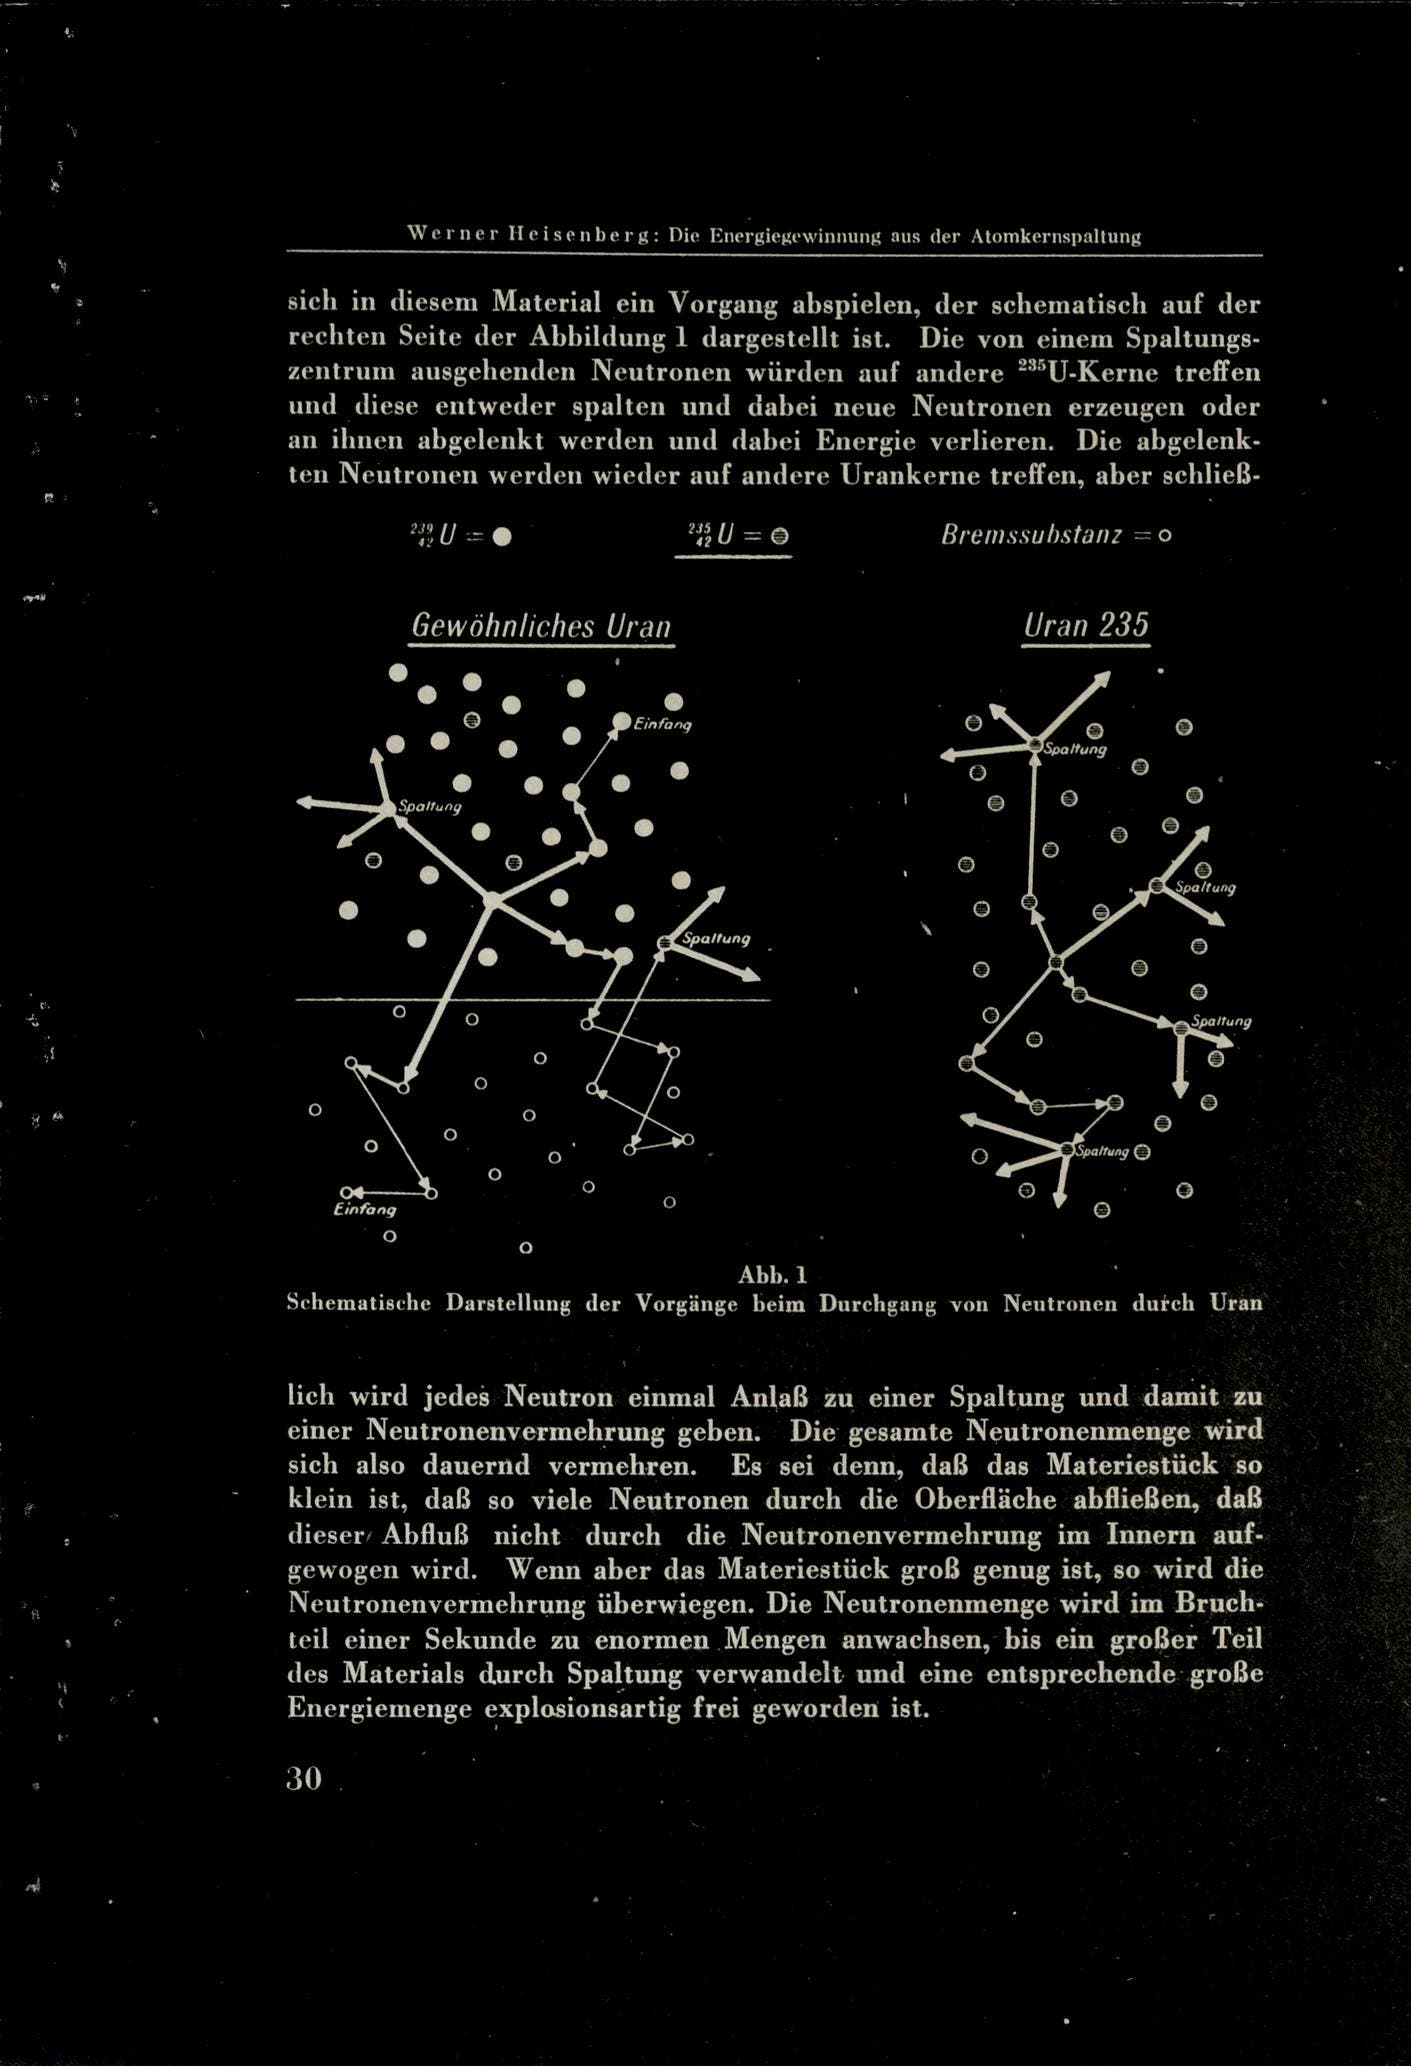 Heisenbergs Originalzeichnung von 1942: Im Reaktor (links) können die Spalt-Neutronen gestreut oder eingefangen werden, aber auch neue Spaltungen verursachen, wenn sie nach der Abbremsung im Moderator (unten) zurückkommen. In der Bombe (rechts) werden neue Spaltungen direkt, ohne Abbremsung, ausgelöst.